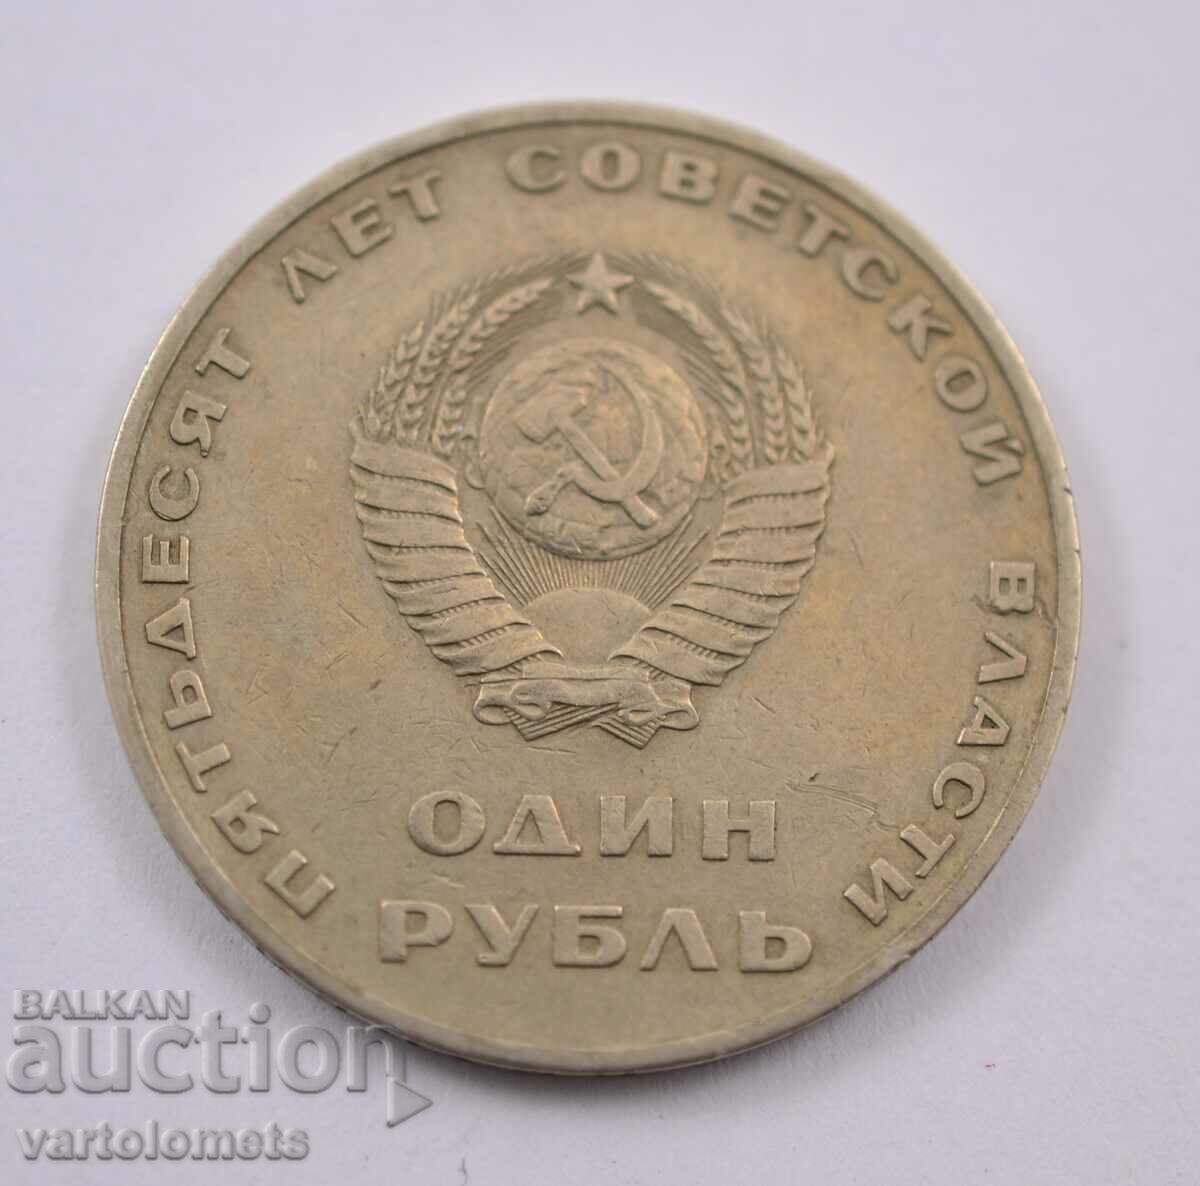 1 rublă, 1967 - URSS 50 de ani de putere sovietică